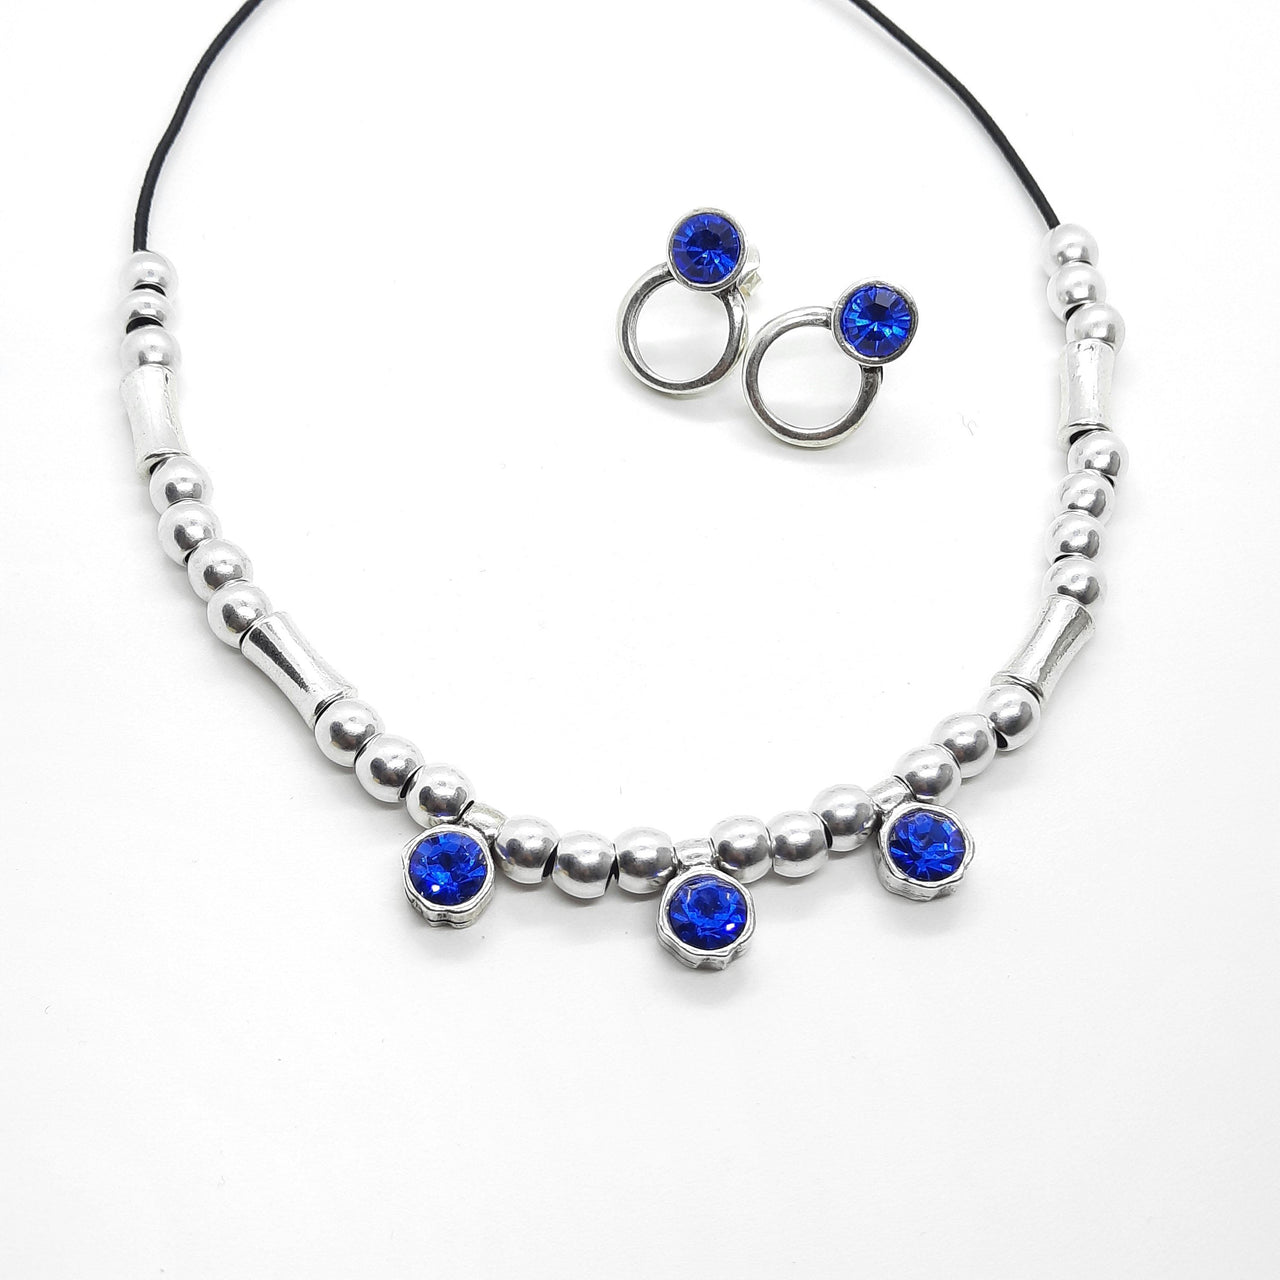 Halskette mit Silber-Perlen und blauen Kristallen - Baby Blue Cercle Halsketten KOOMPLIMENTS